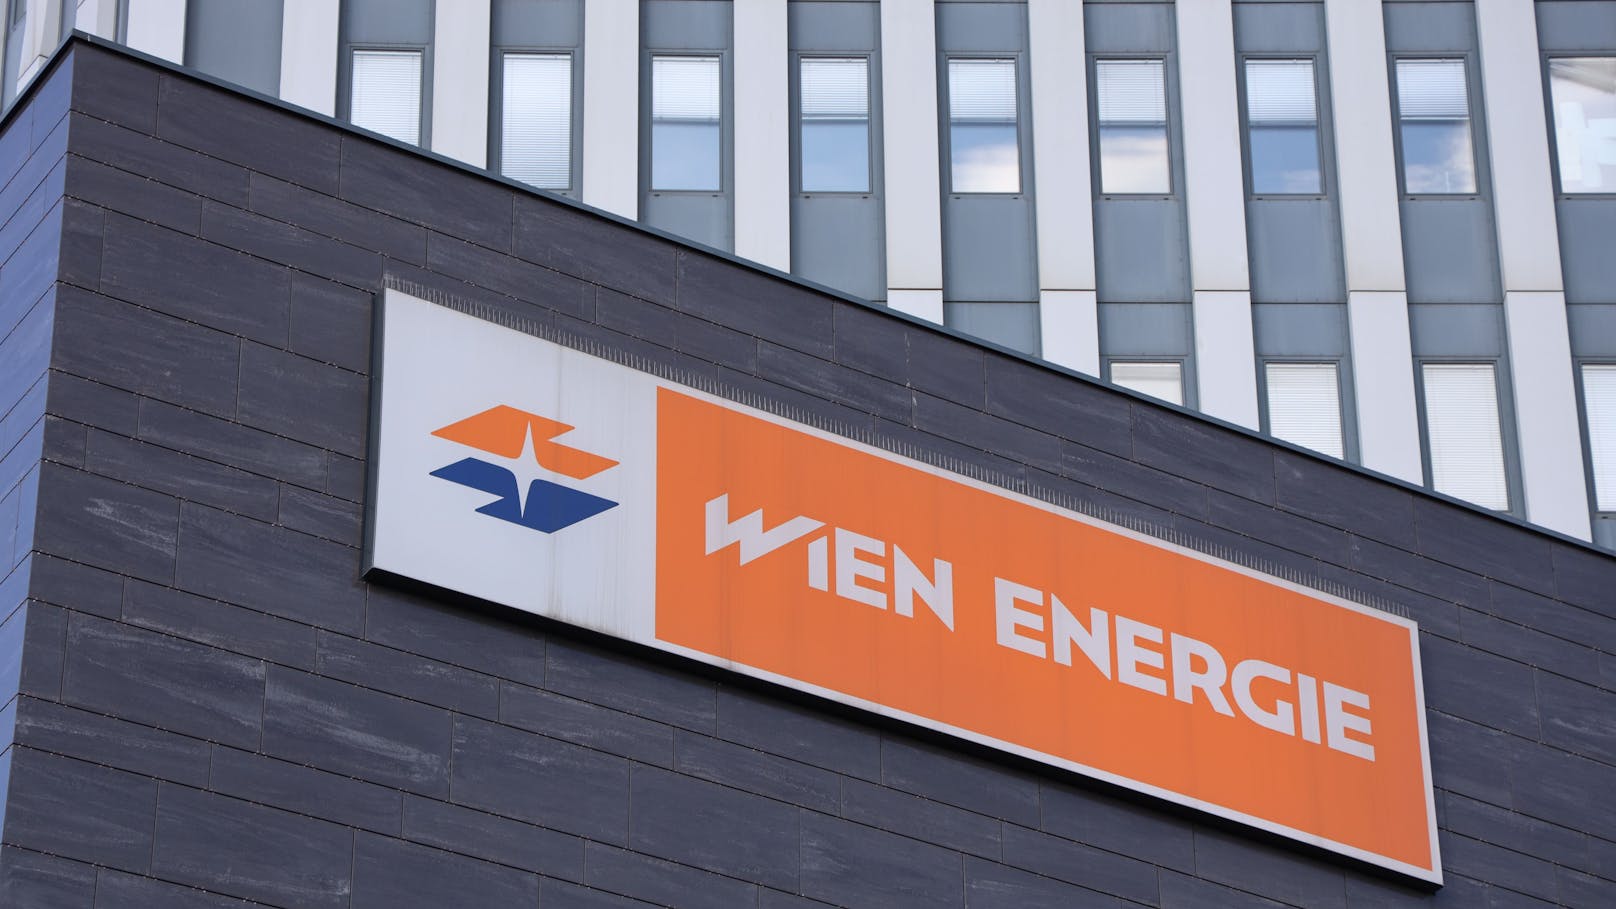 Wien-Energie – Stadt verdiente durch Kredite 6 Mio. €